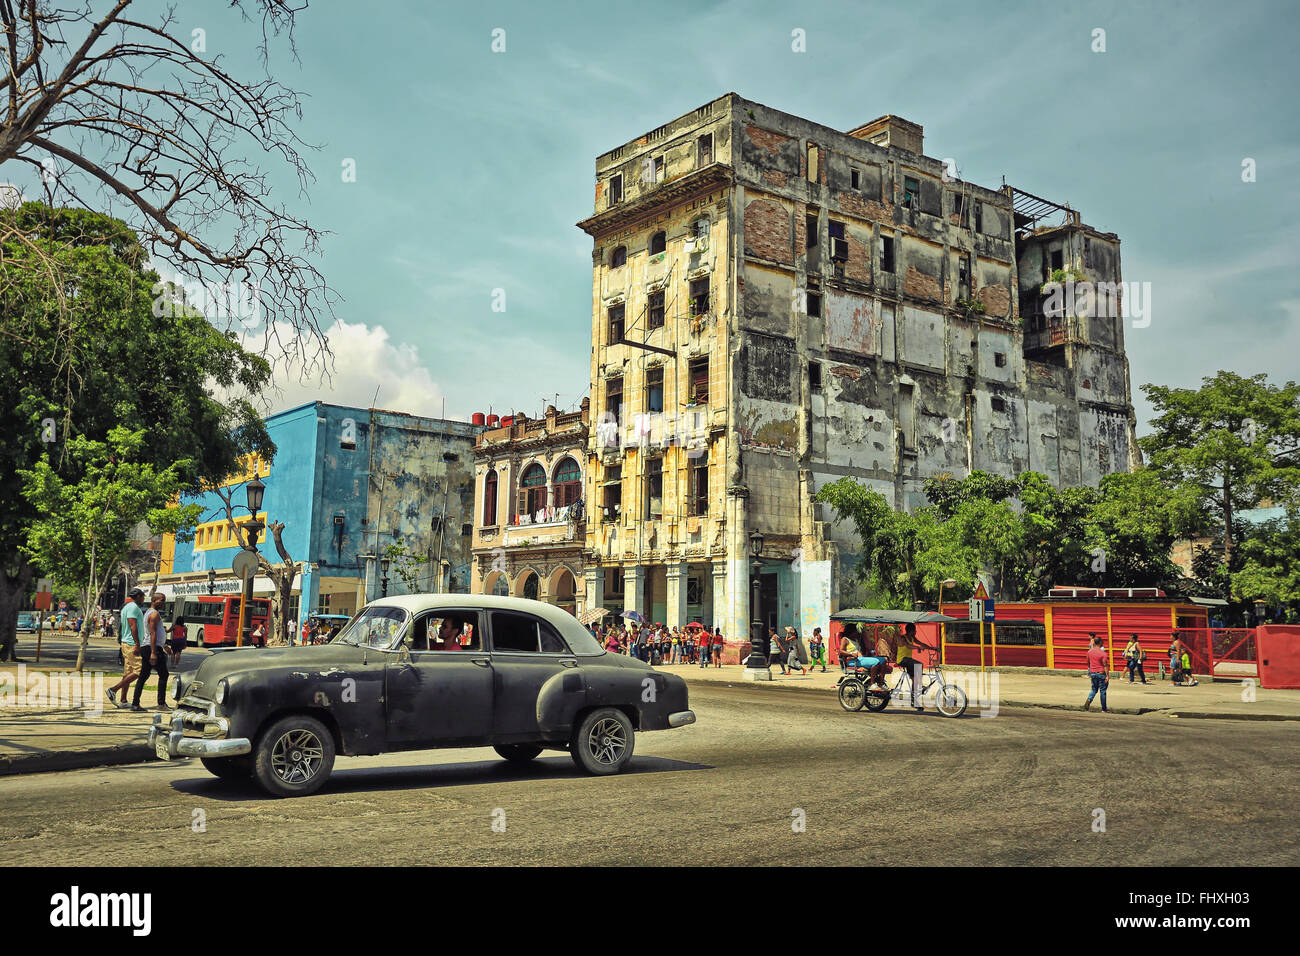 Vintage voiture américaine sur l'historique de l'vieux bâtiments coloniaux de la vieille Havane. Photo style vintage Banque D'Images